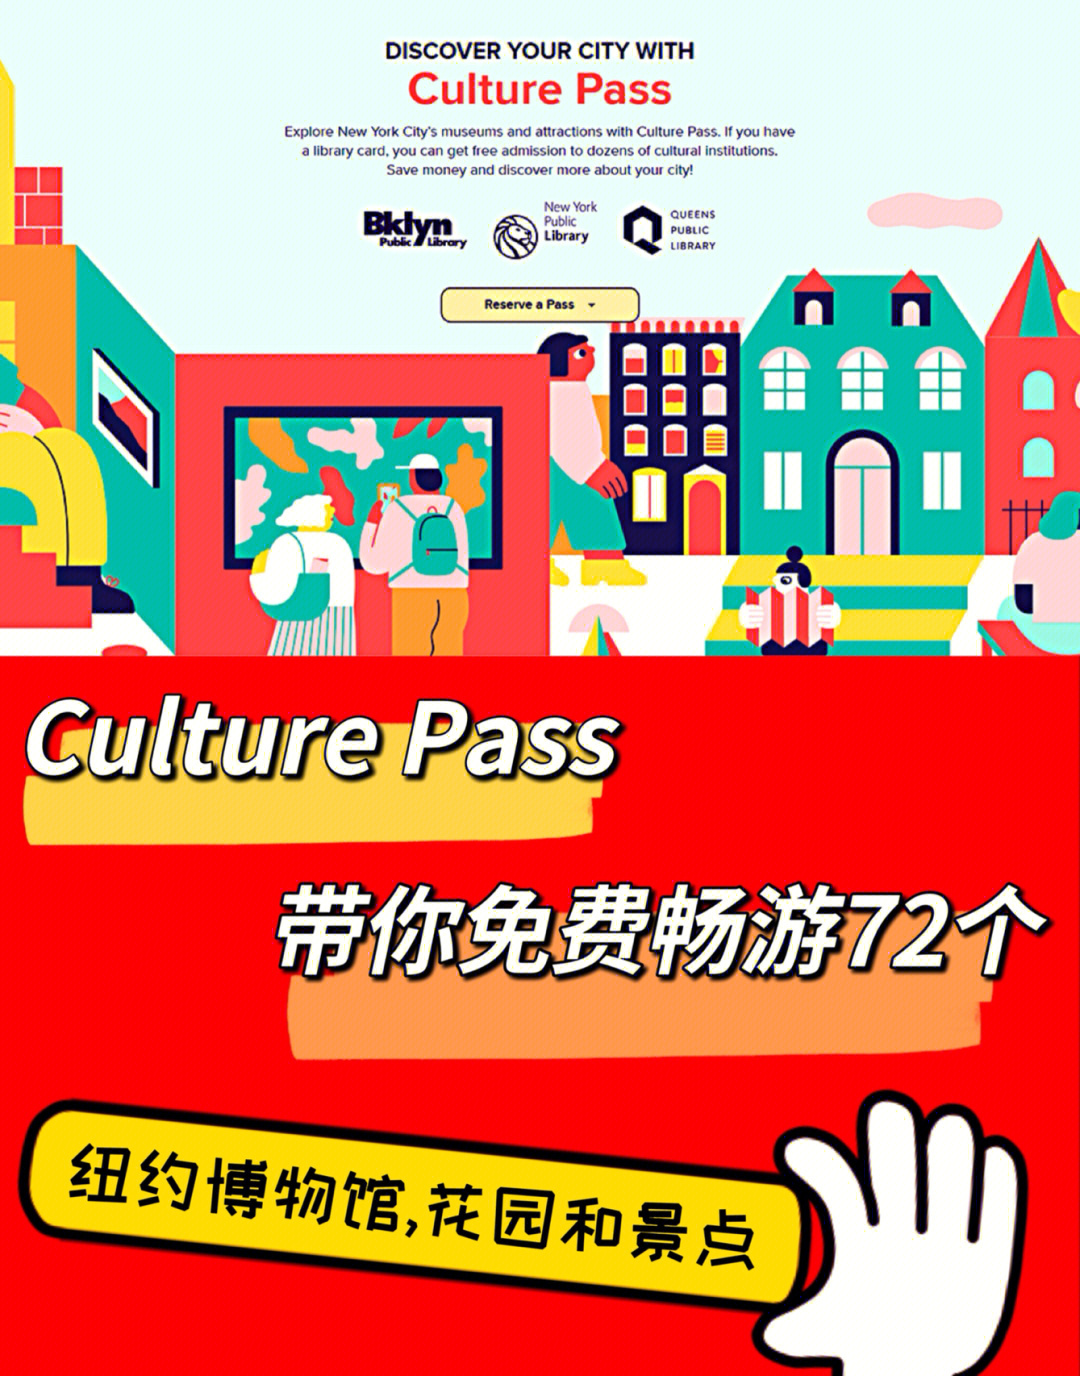 pass免费游玩72个纽约著名博物馆和景点～99culture pass文化通行证